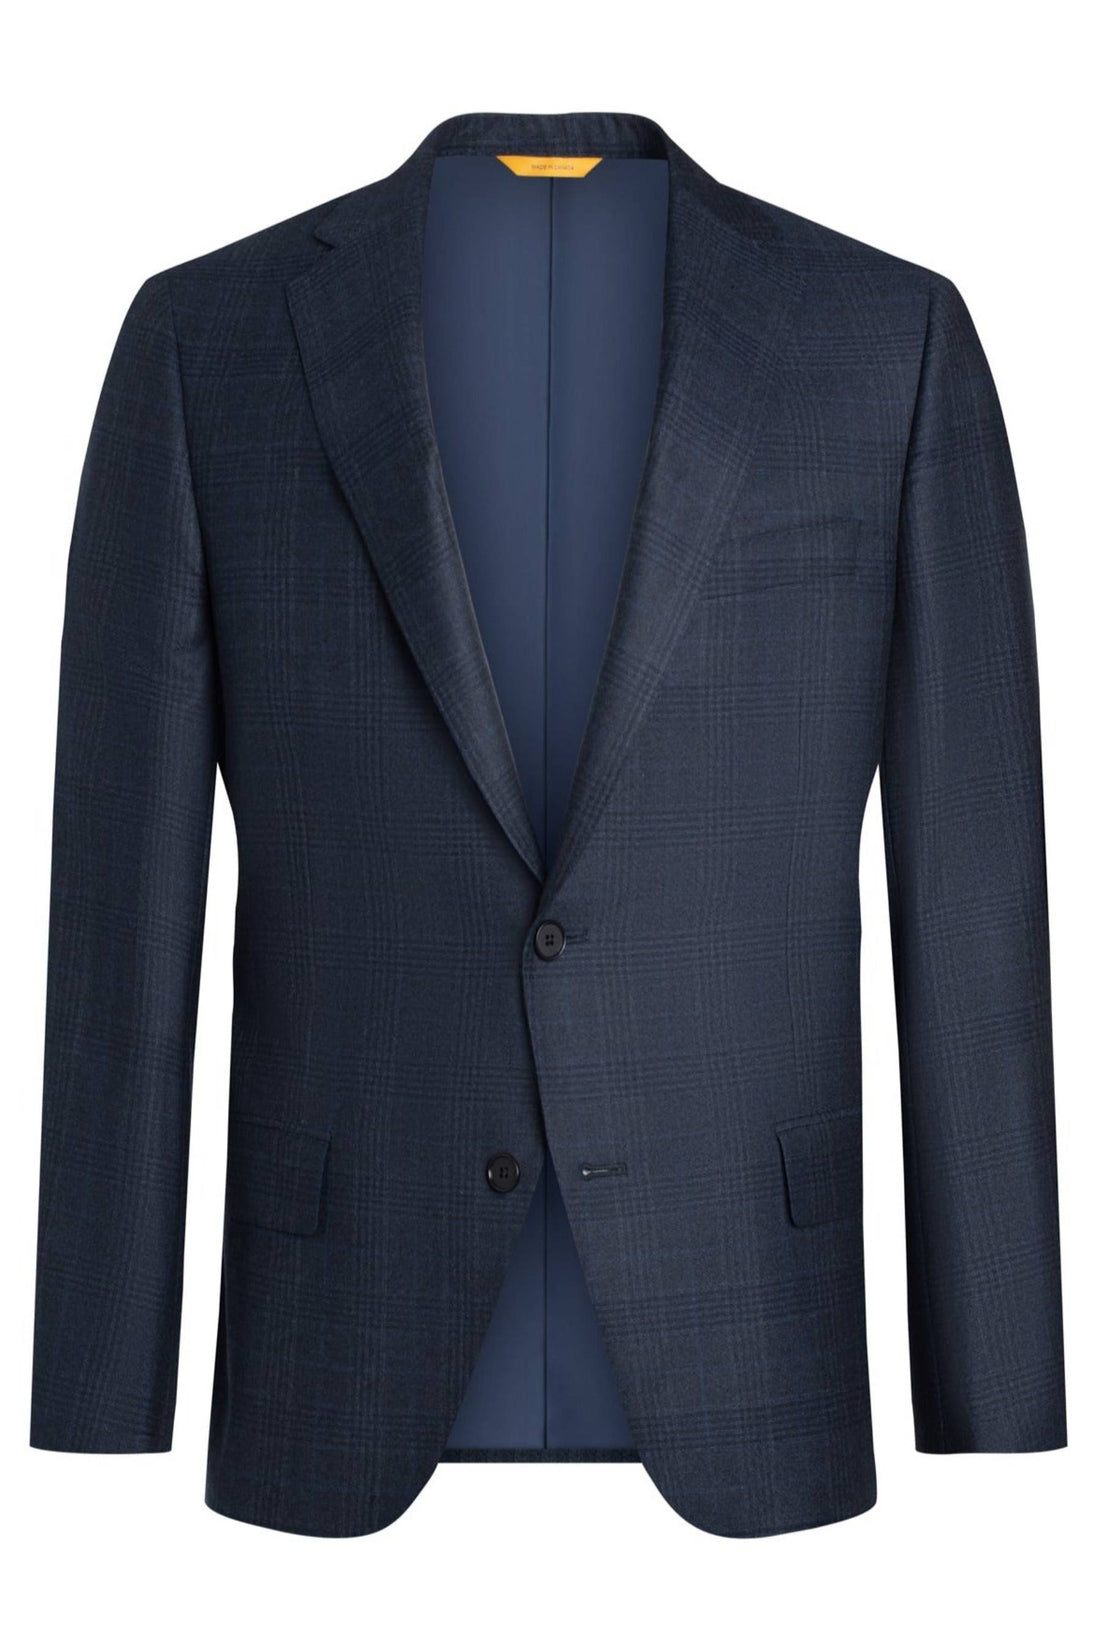 Blue Plaid Wool Silk  Suit jacket front